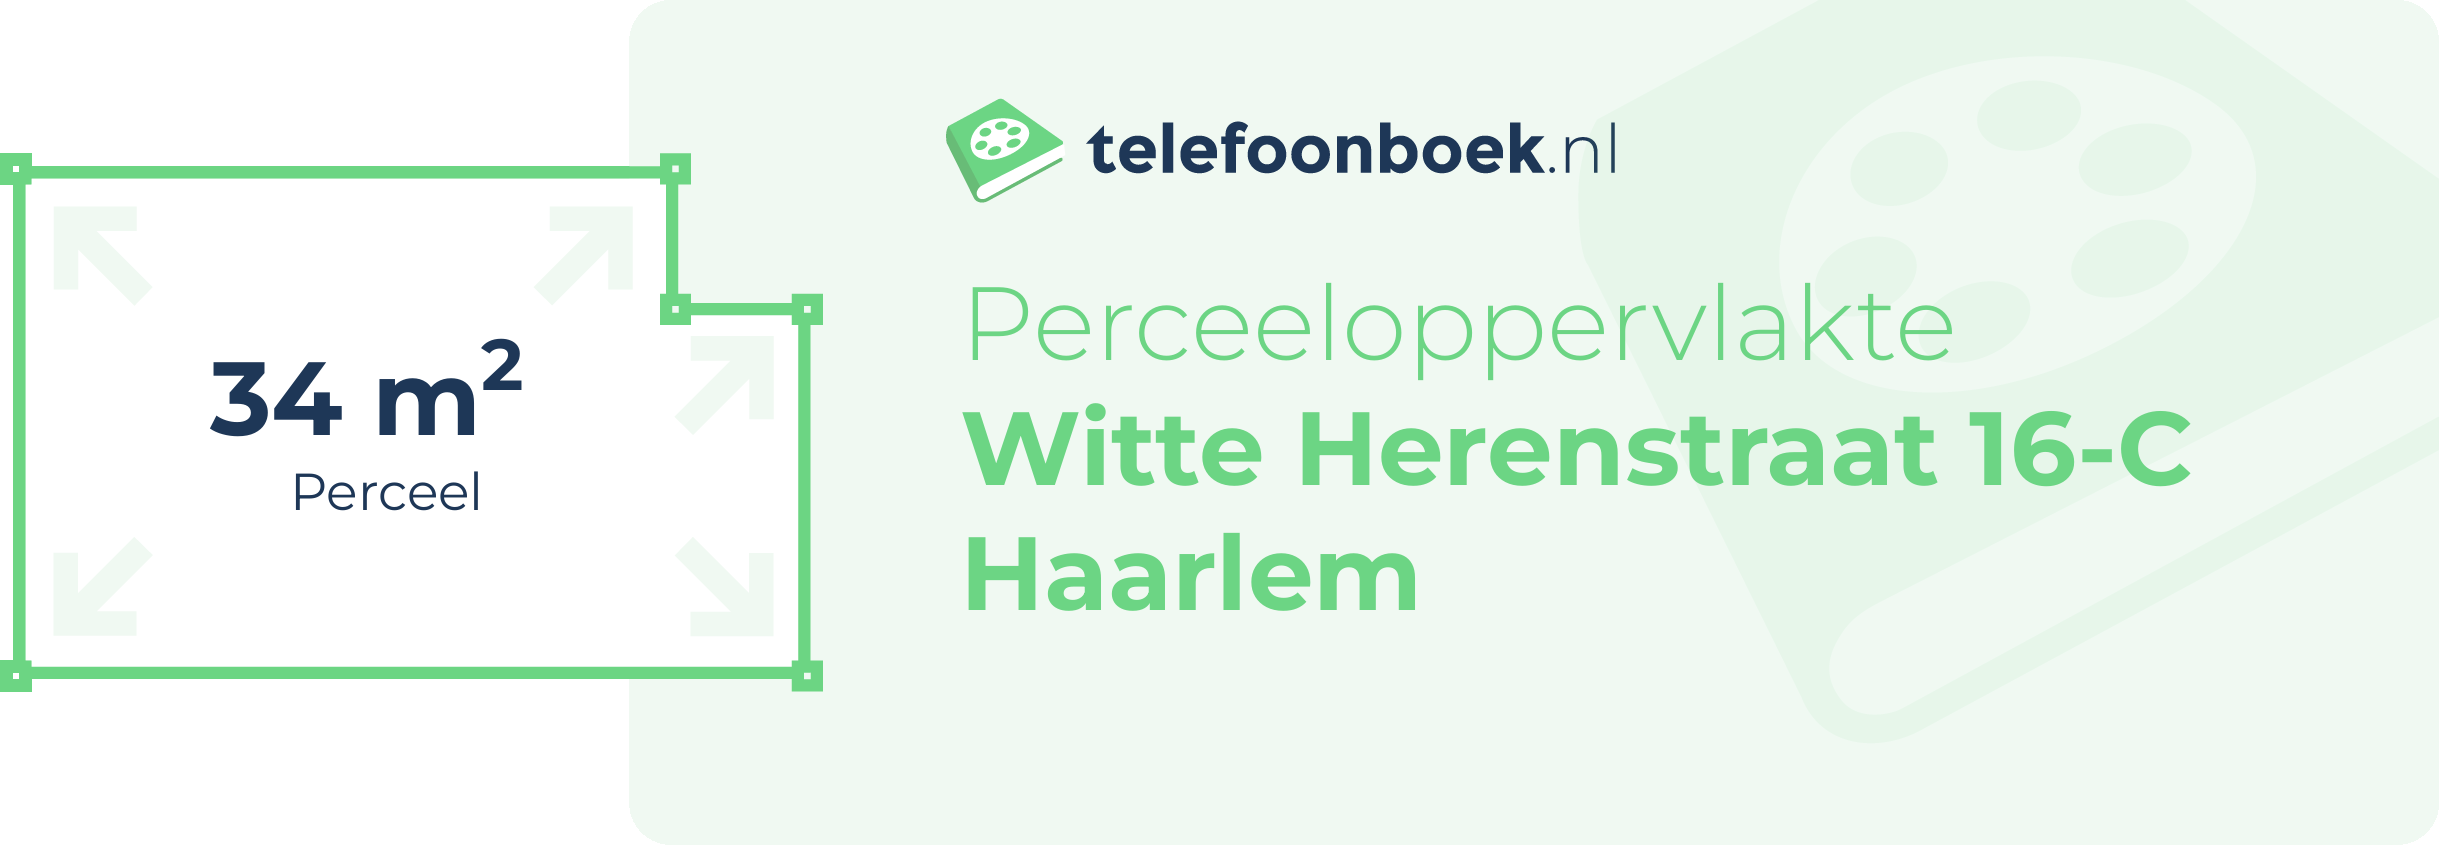 Perceeloppervlakte Witte Herenstraat 16-C Haarlem